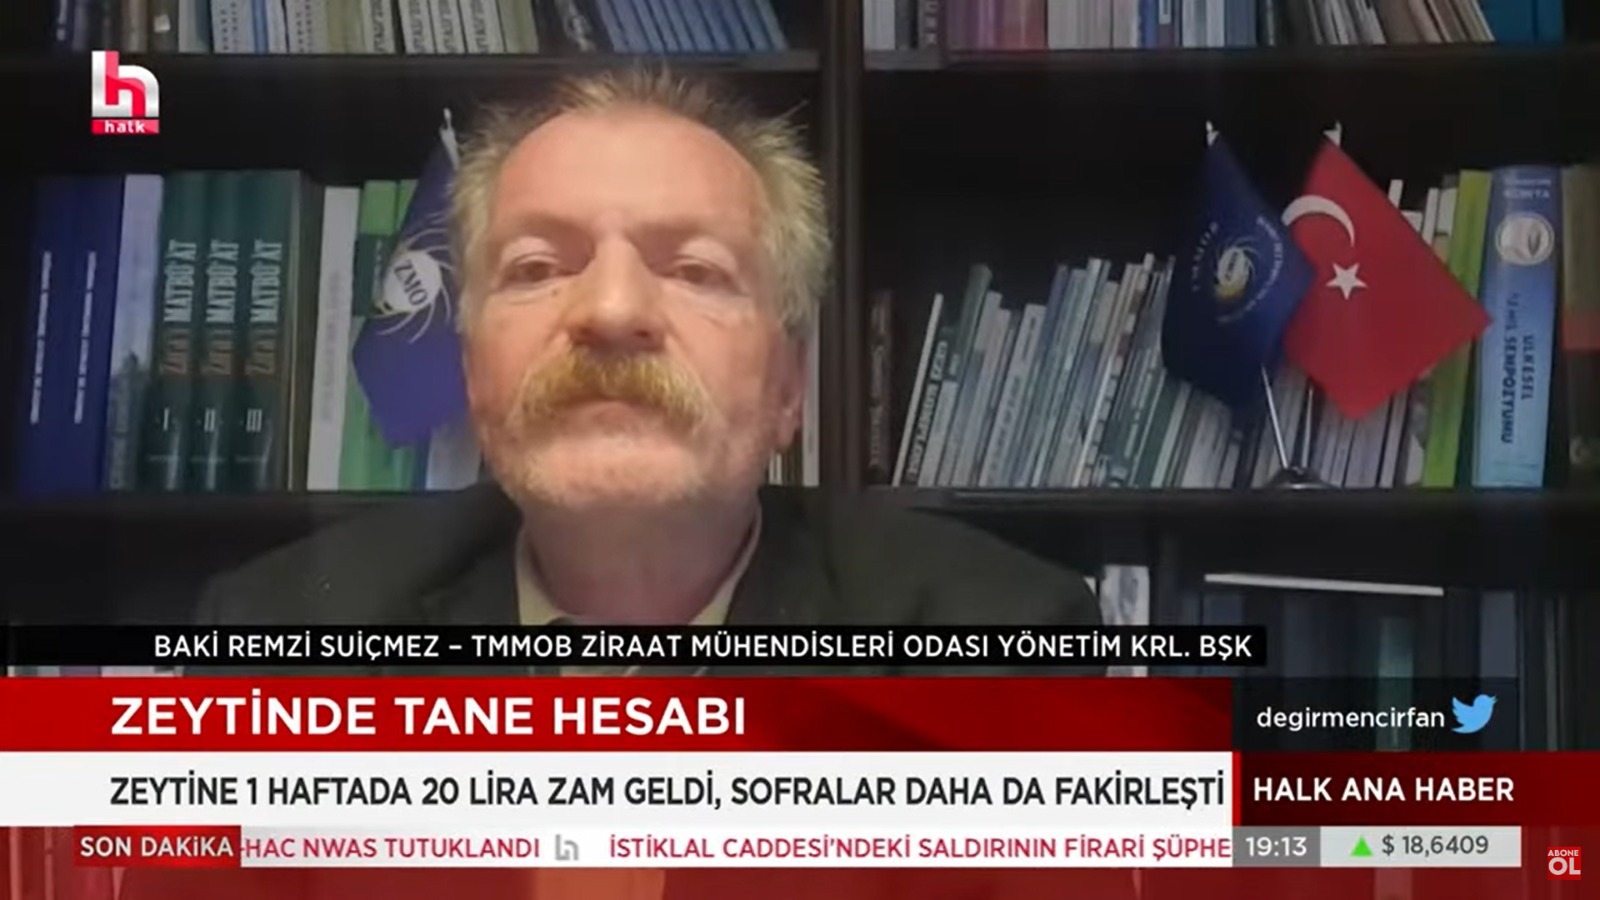 HALK TV- "İRFAN DEĞİRMENCİ İLE HALK ANA HABER" PROGRAMI